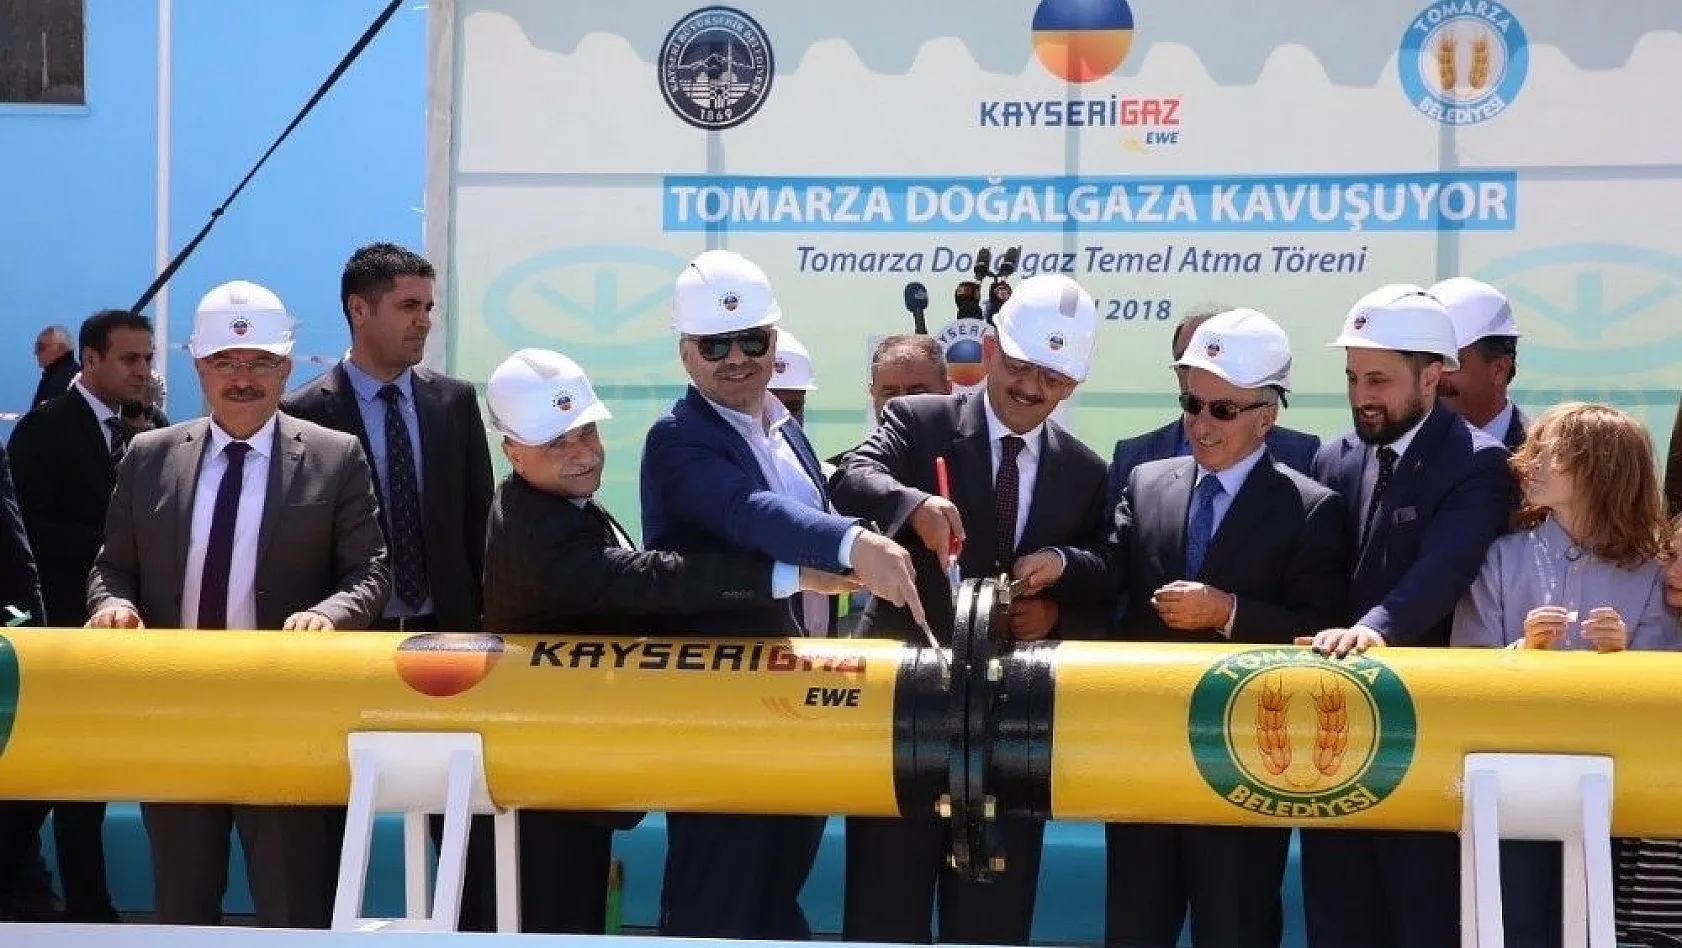 Başkan Çelik, Tomarza'da doğal gaz temel atma törenine katıldı
